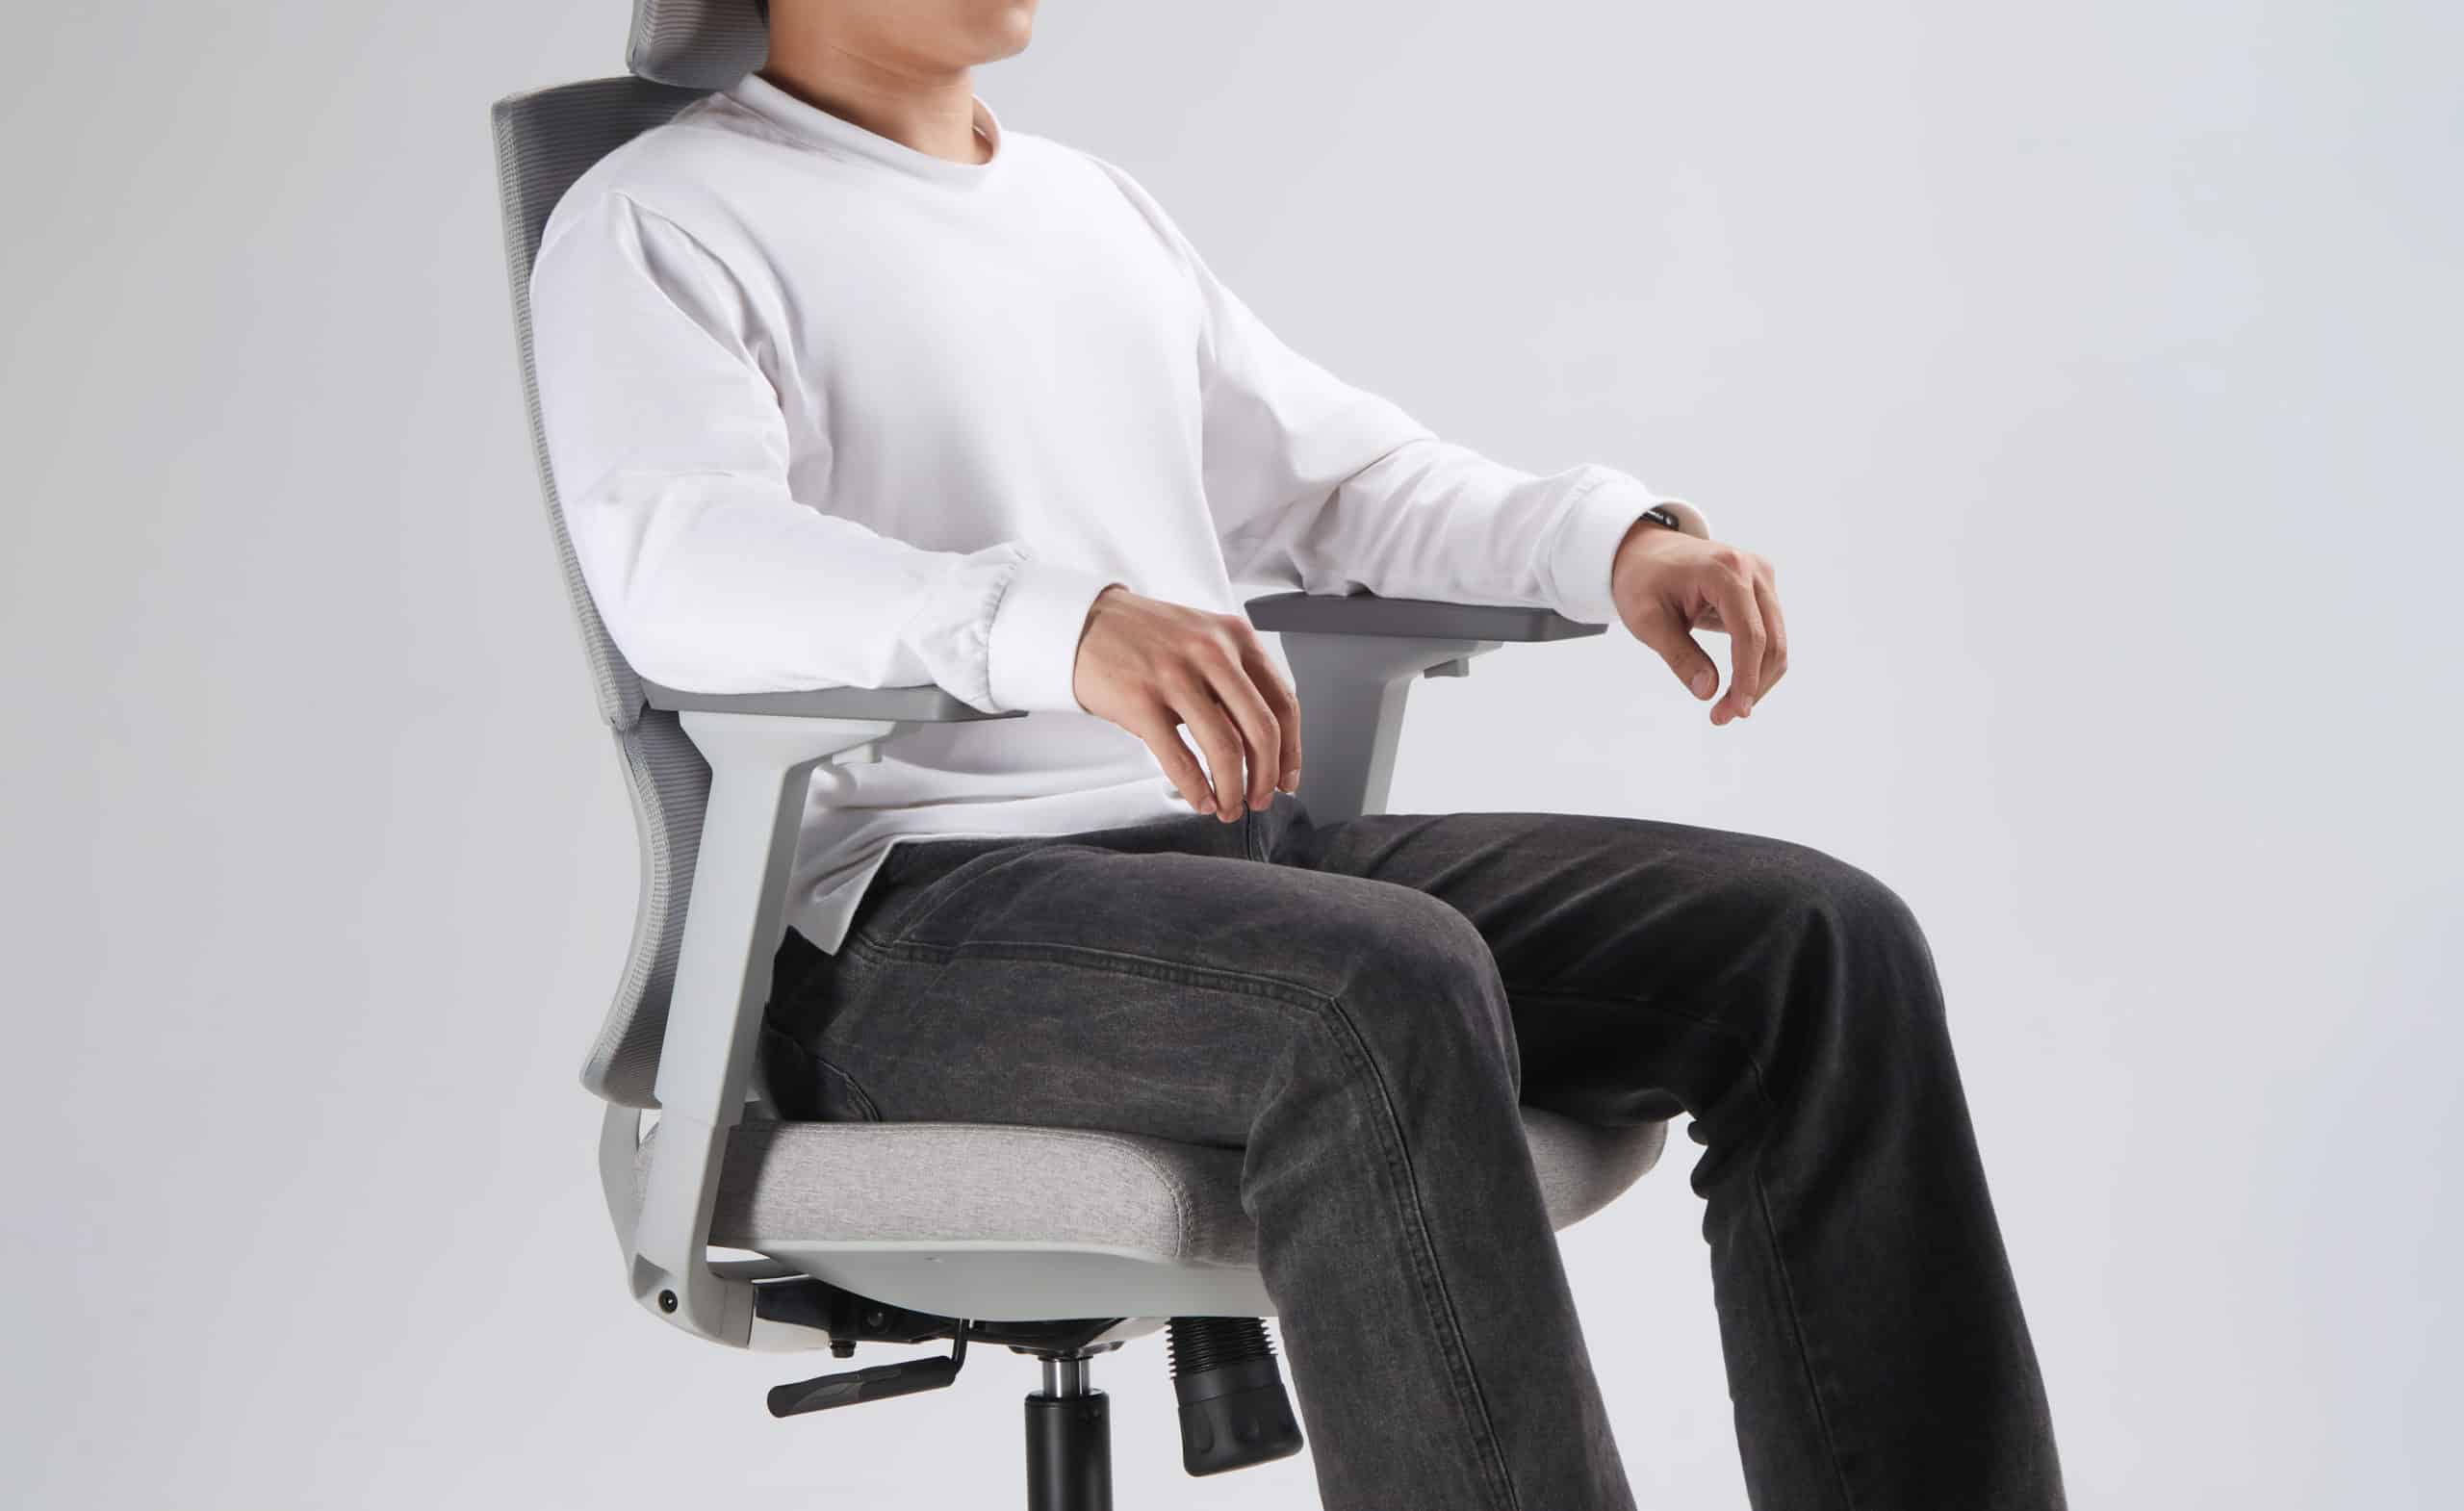 modelo sentado em uma cadeira de escritório slikdesk ergos cinza claro em um fundo branco